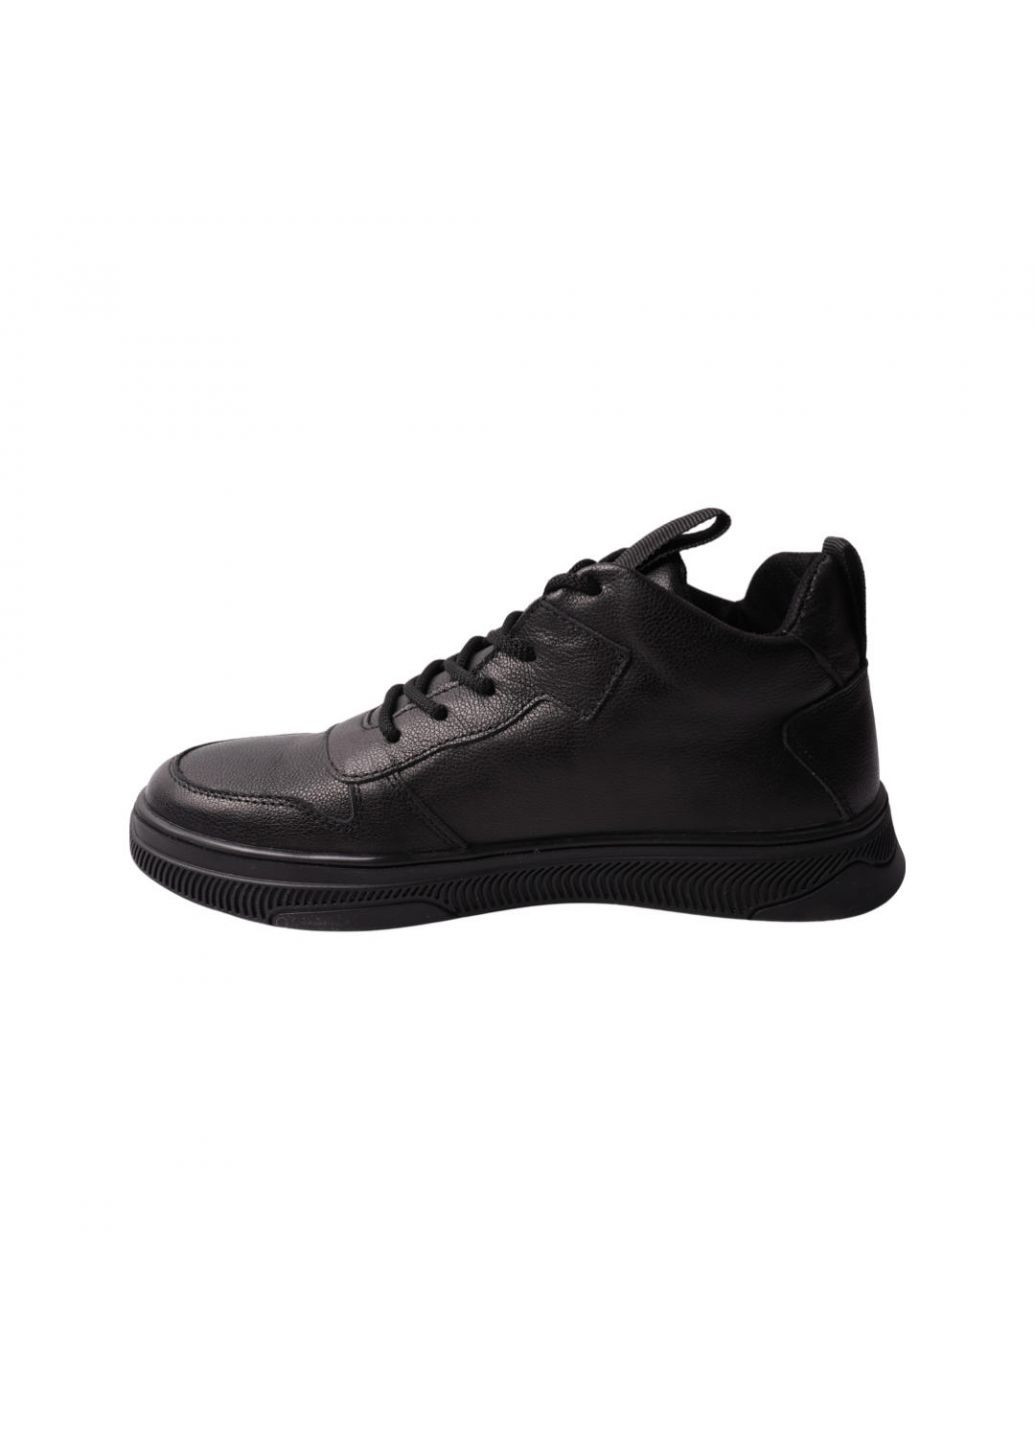 Черные ботинки мужские черные натуральная кожа Visazh